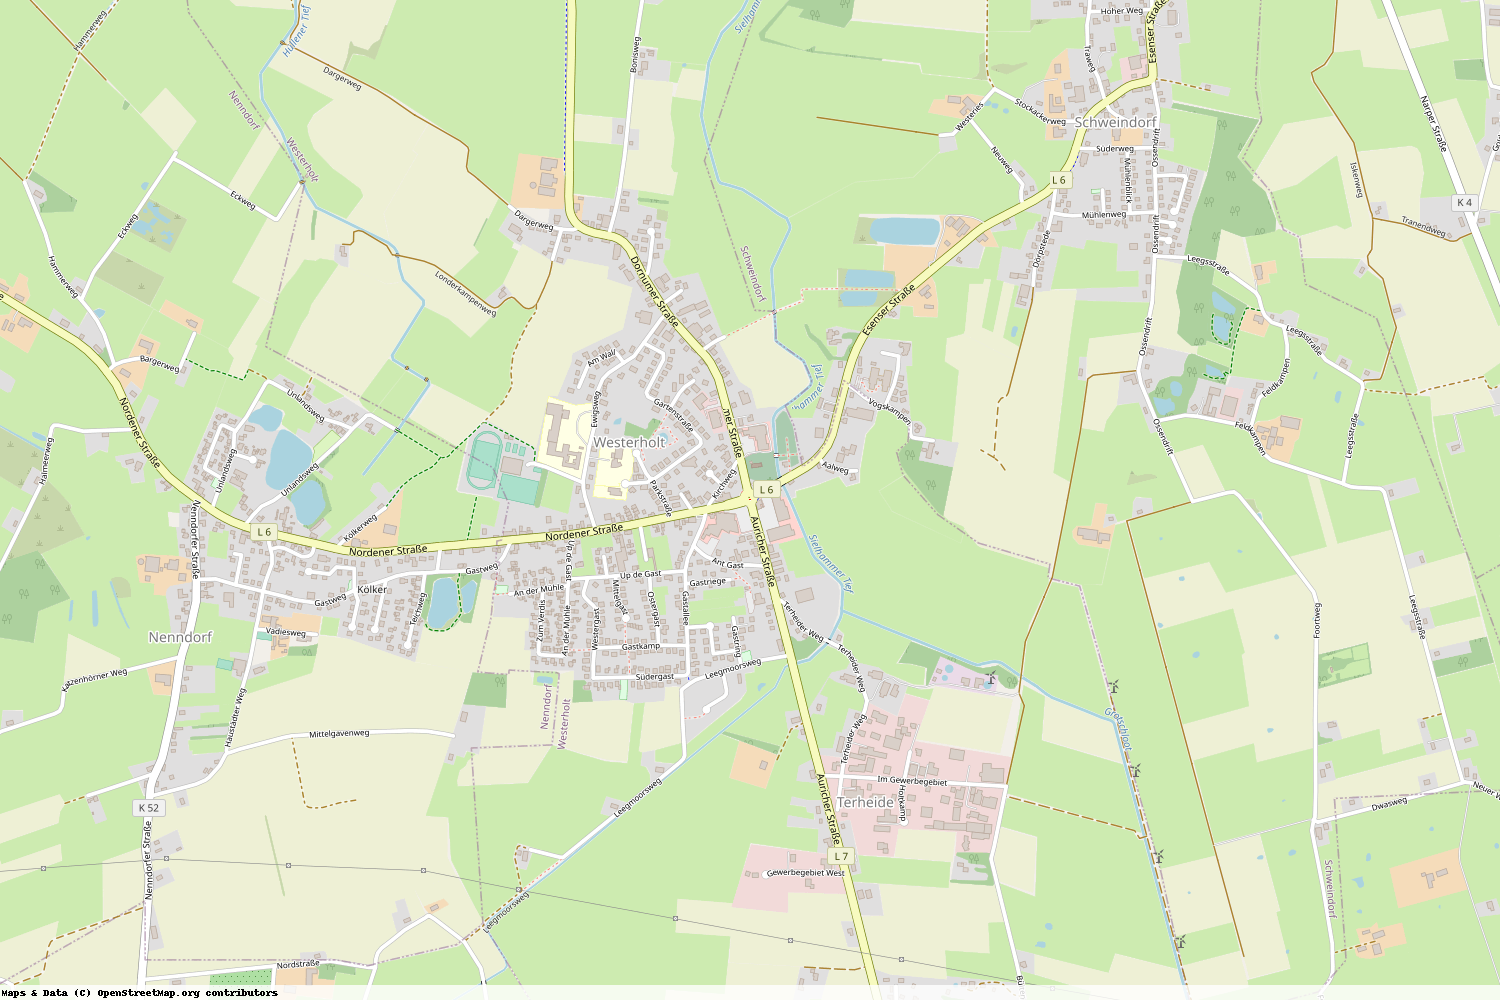 Ist gerade Stromausfall in Niedersachsen - Wittmund - Westerholt?